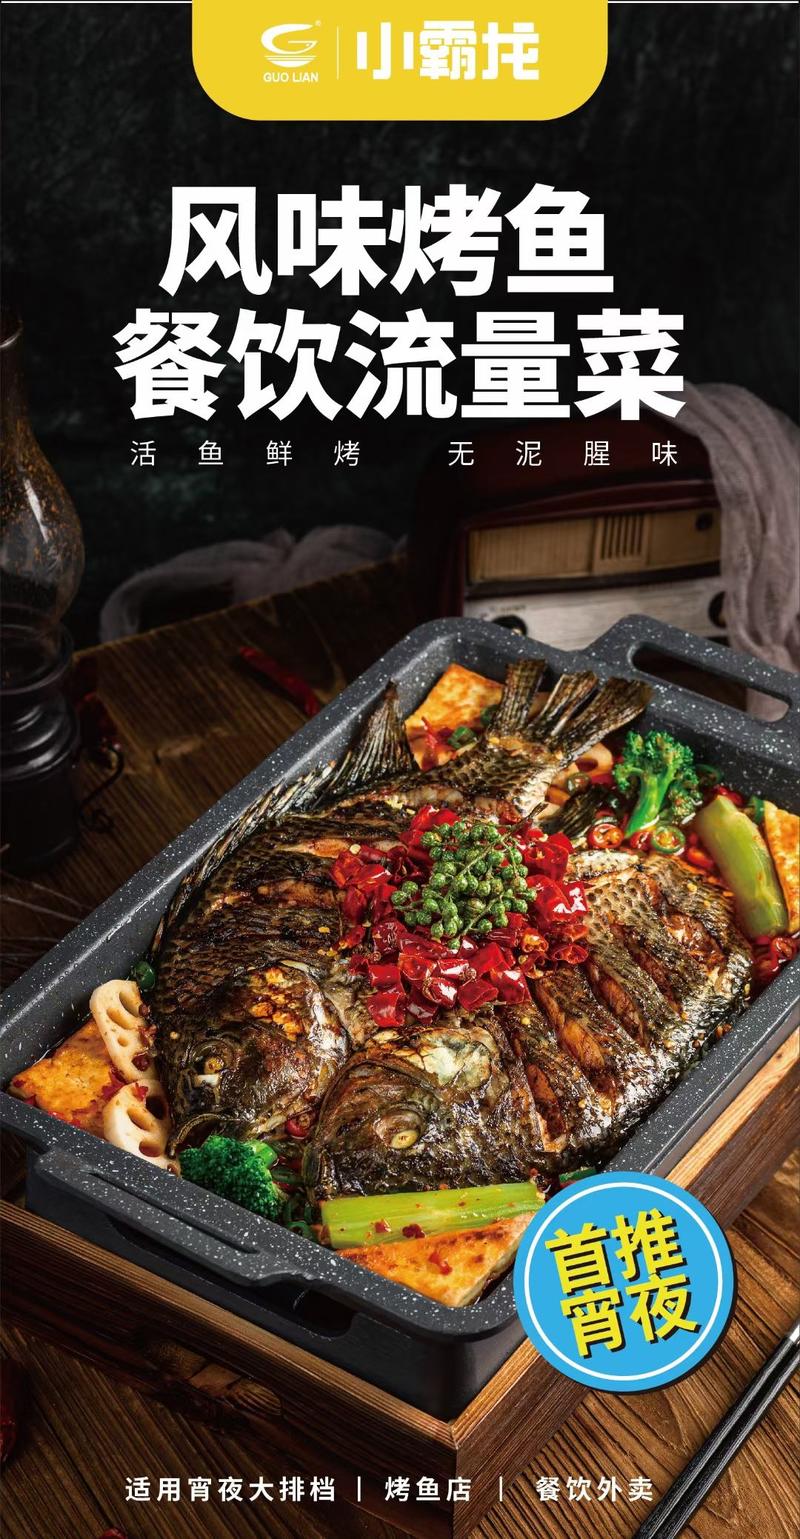 【国联】麻辣烤鱼2斤*10盒/件大厂货质量保证加热即食